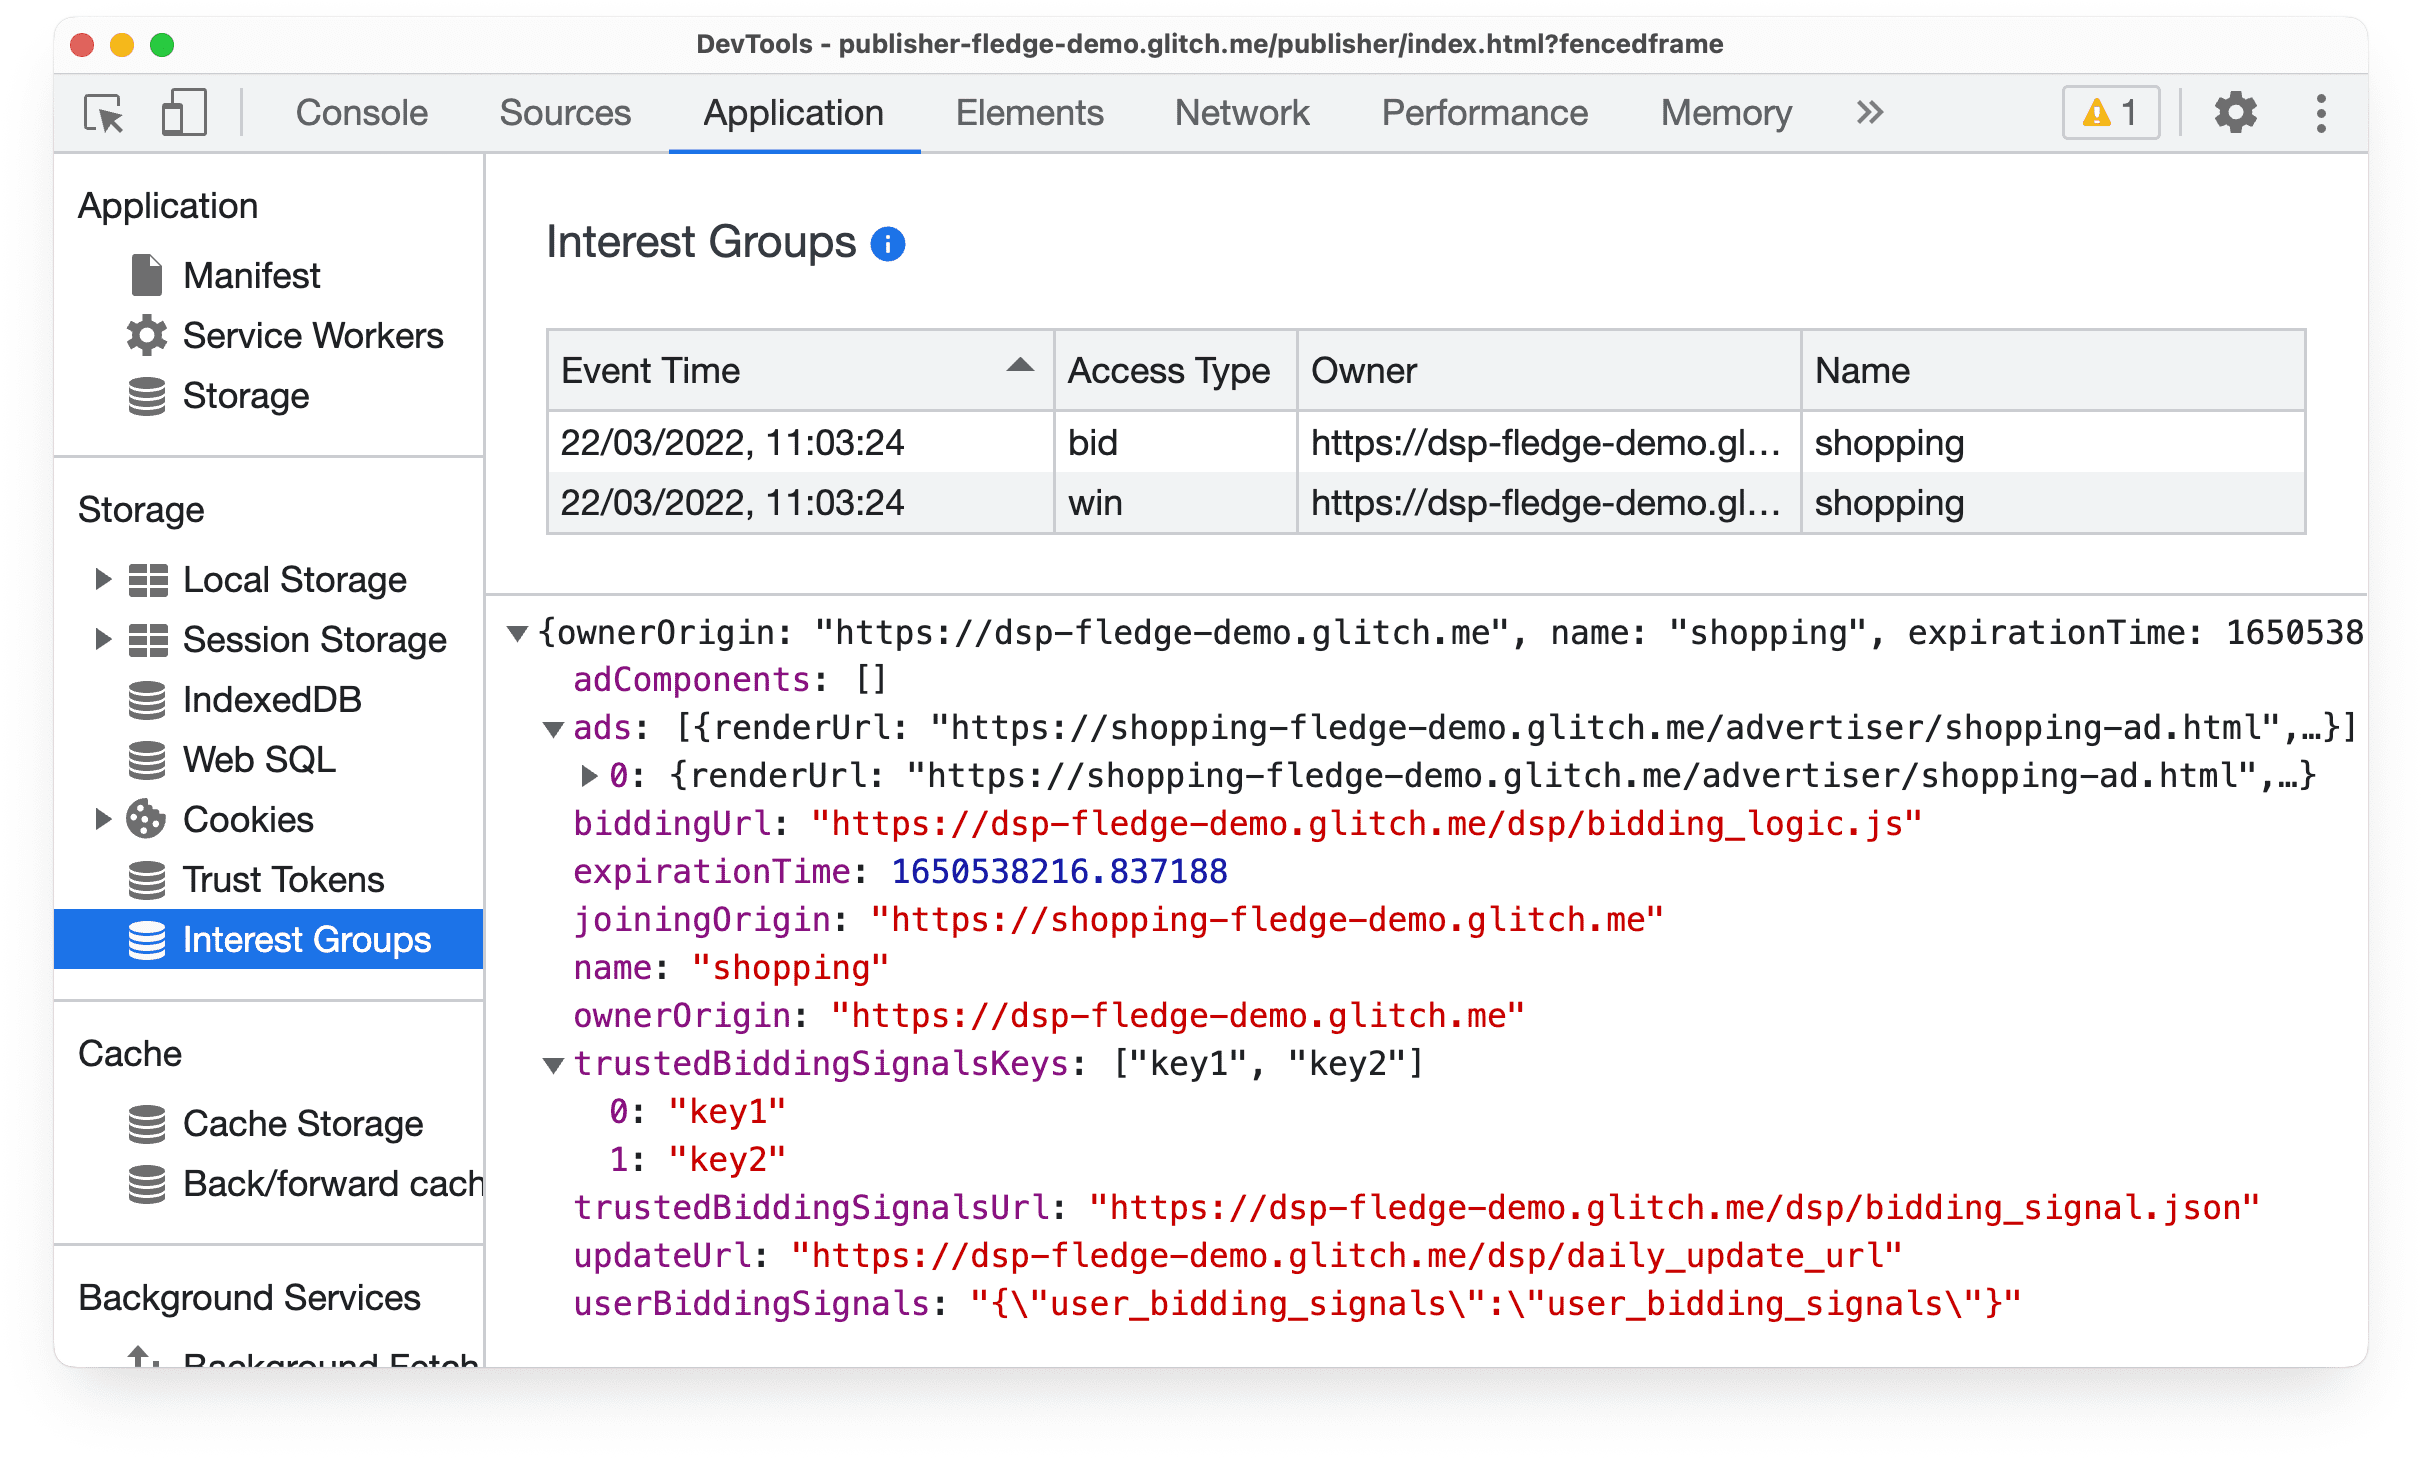 Chrome Canary の DevTools の [Application] パネル。Protected Audience オークションの入札と落札イベントに関する情報が表示されています。